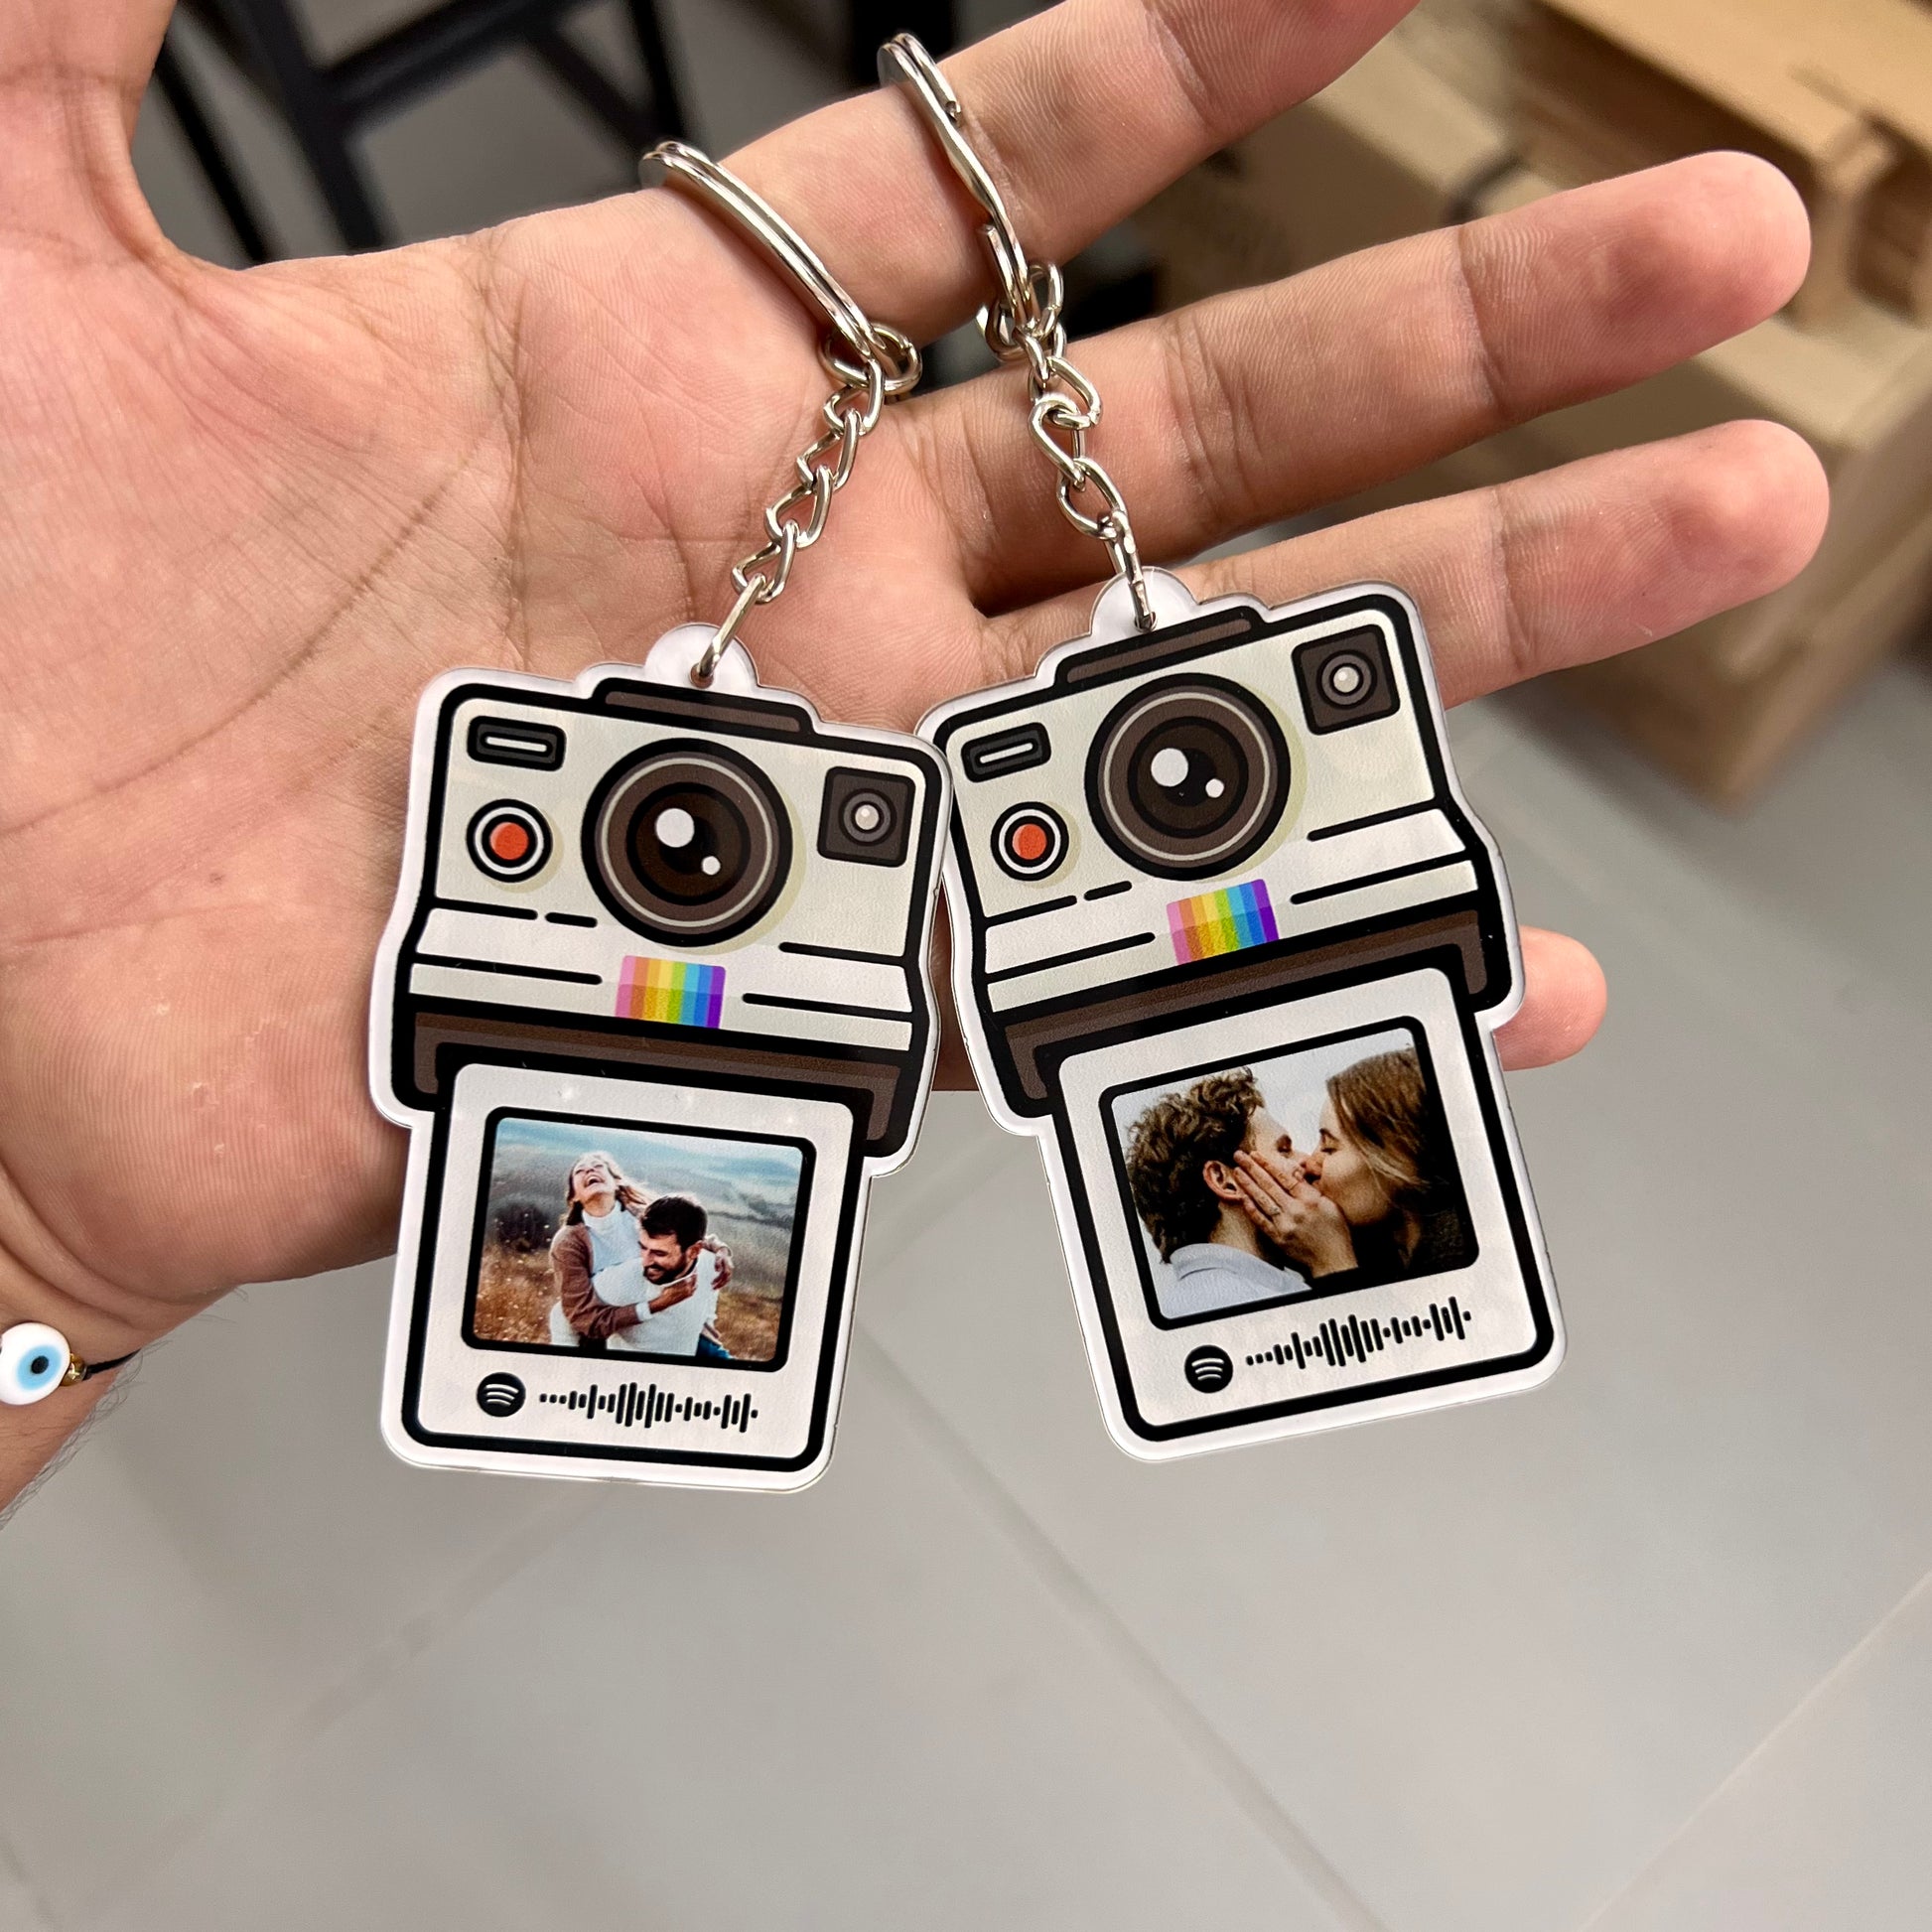 2x Llaveros Personalizados Polaroid